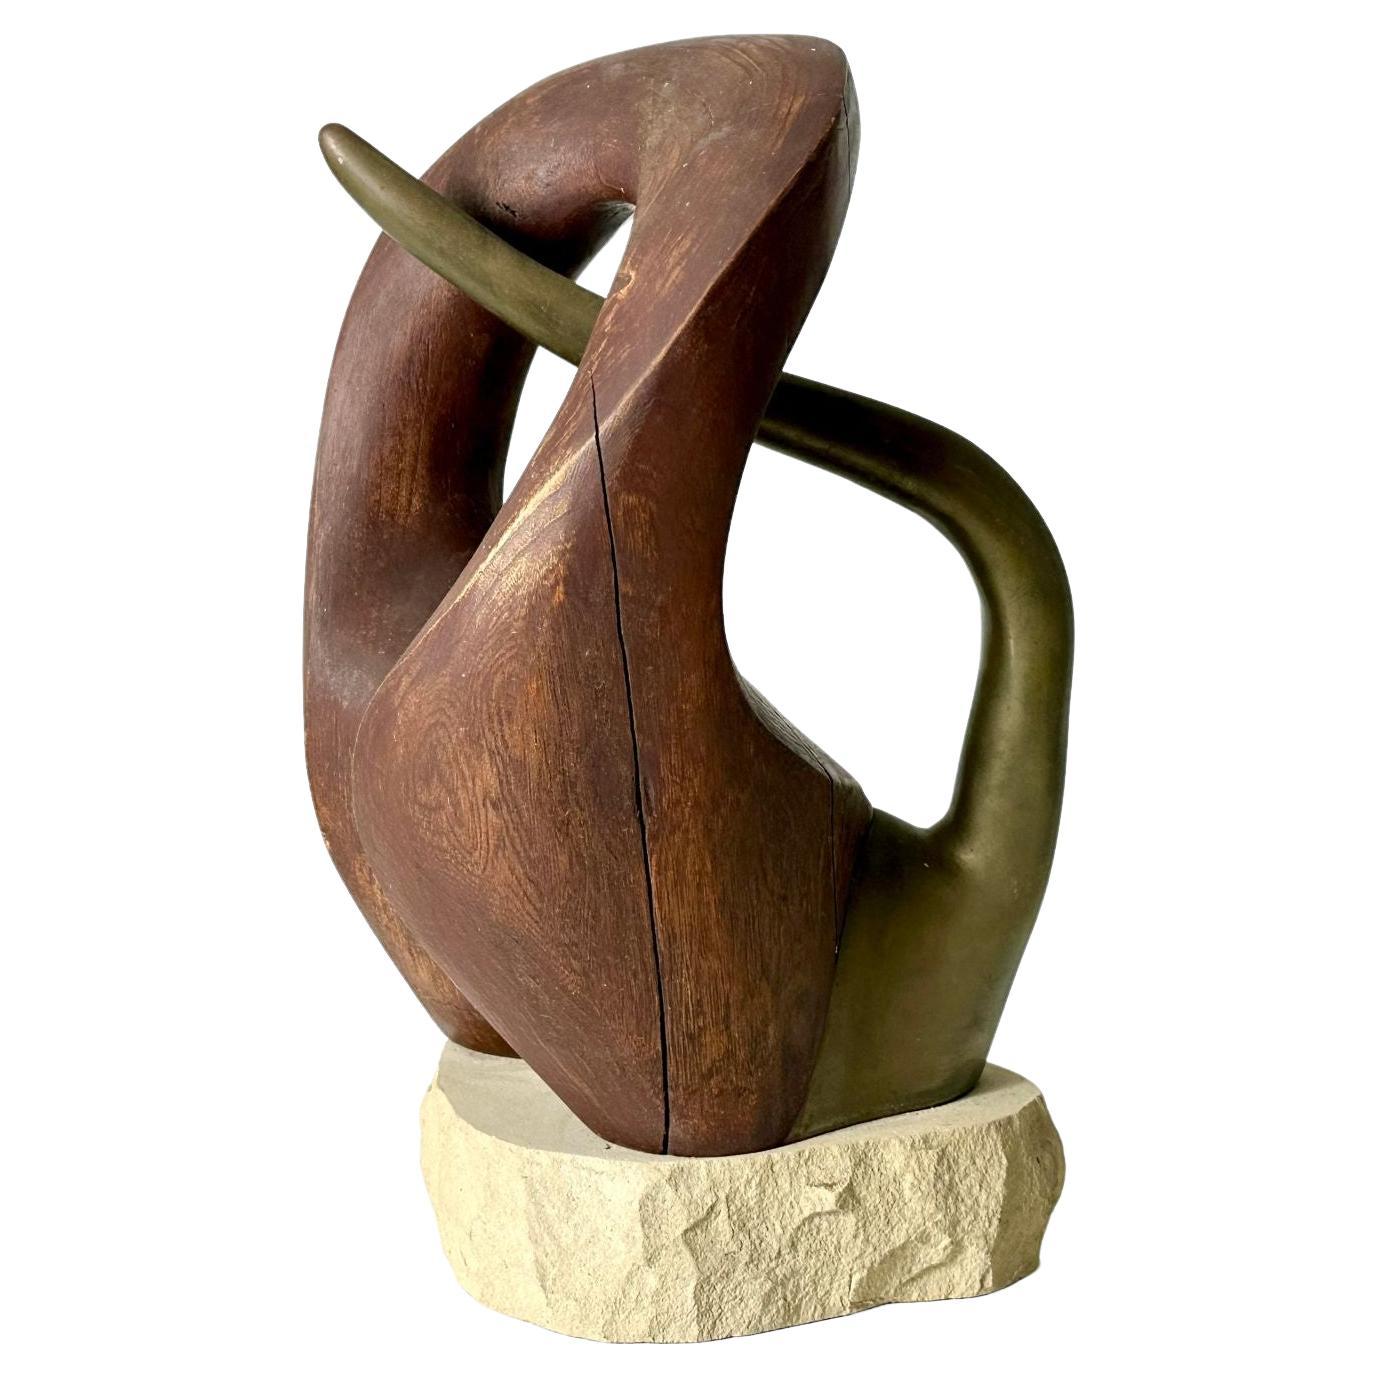 Sculpture abstraite biomorphique en bois et bronze du milieu du siècle dernier, vers les années 1960